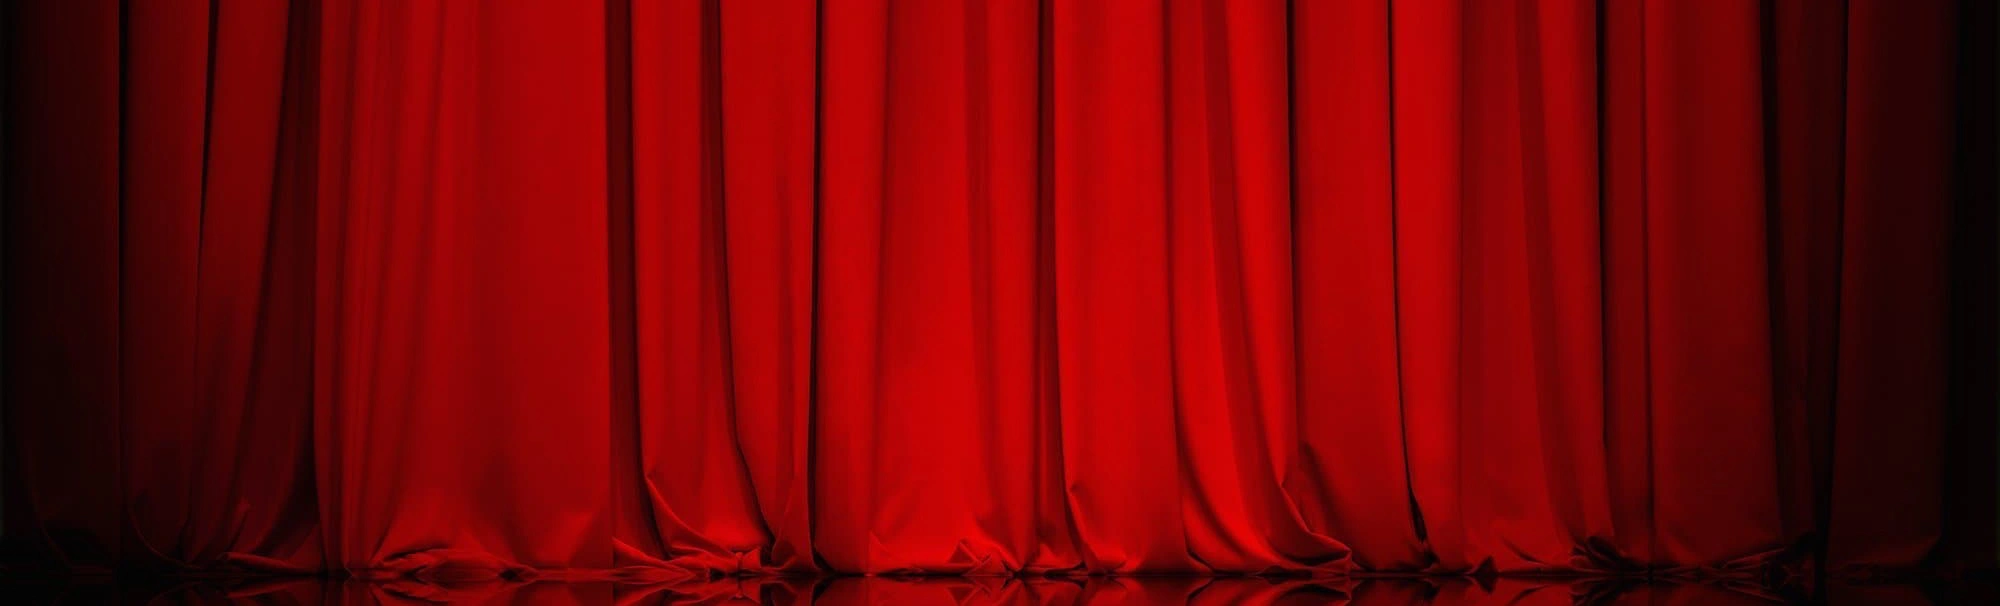 Волнующие искры театральных интриг и смысловое богатство творчества ждут вас на сцене Театра комедии имени Акимова!